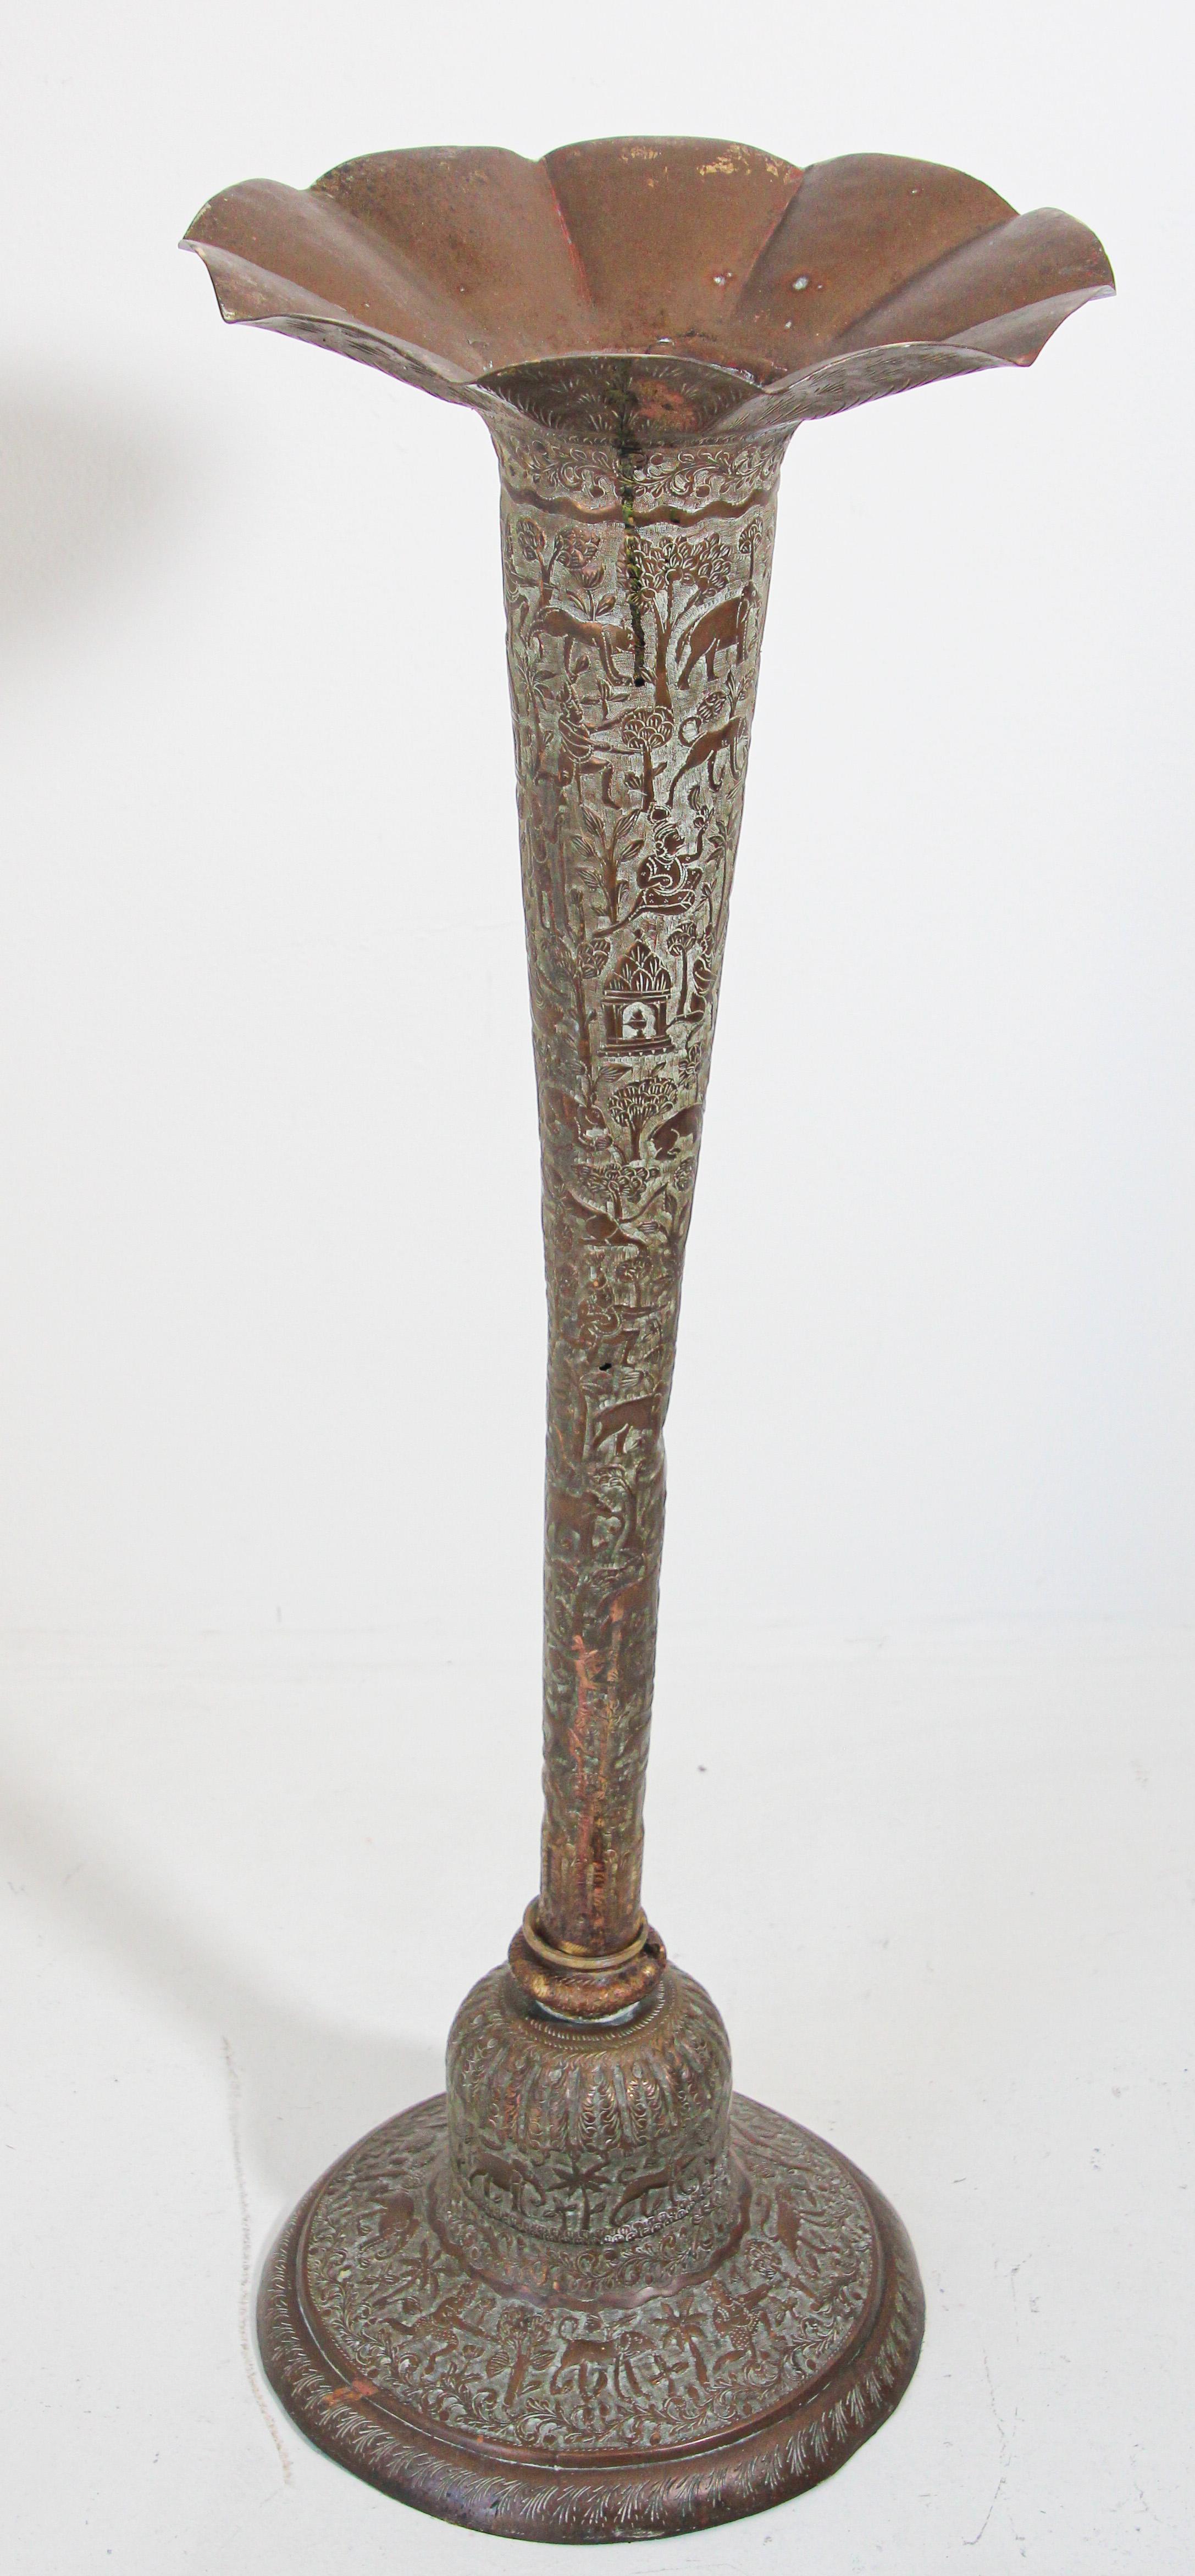 Grand vase en cuivre bronzé au sol, datant du 19e siècle.
Grand vase indo-persan en laiton en forme de trompette.
Grand vase sculptural et élégant fait à la main en métal de couleur bronzée.
Délicatement fabriqués à la main et gravés, martelés et